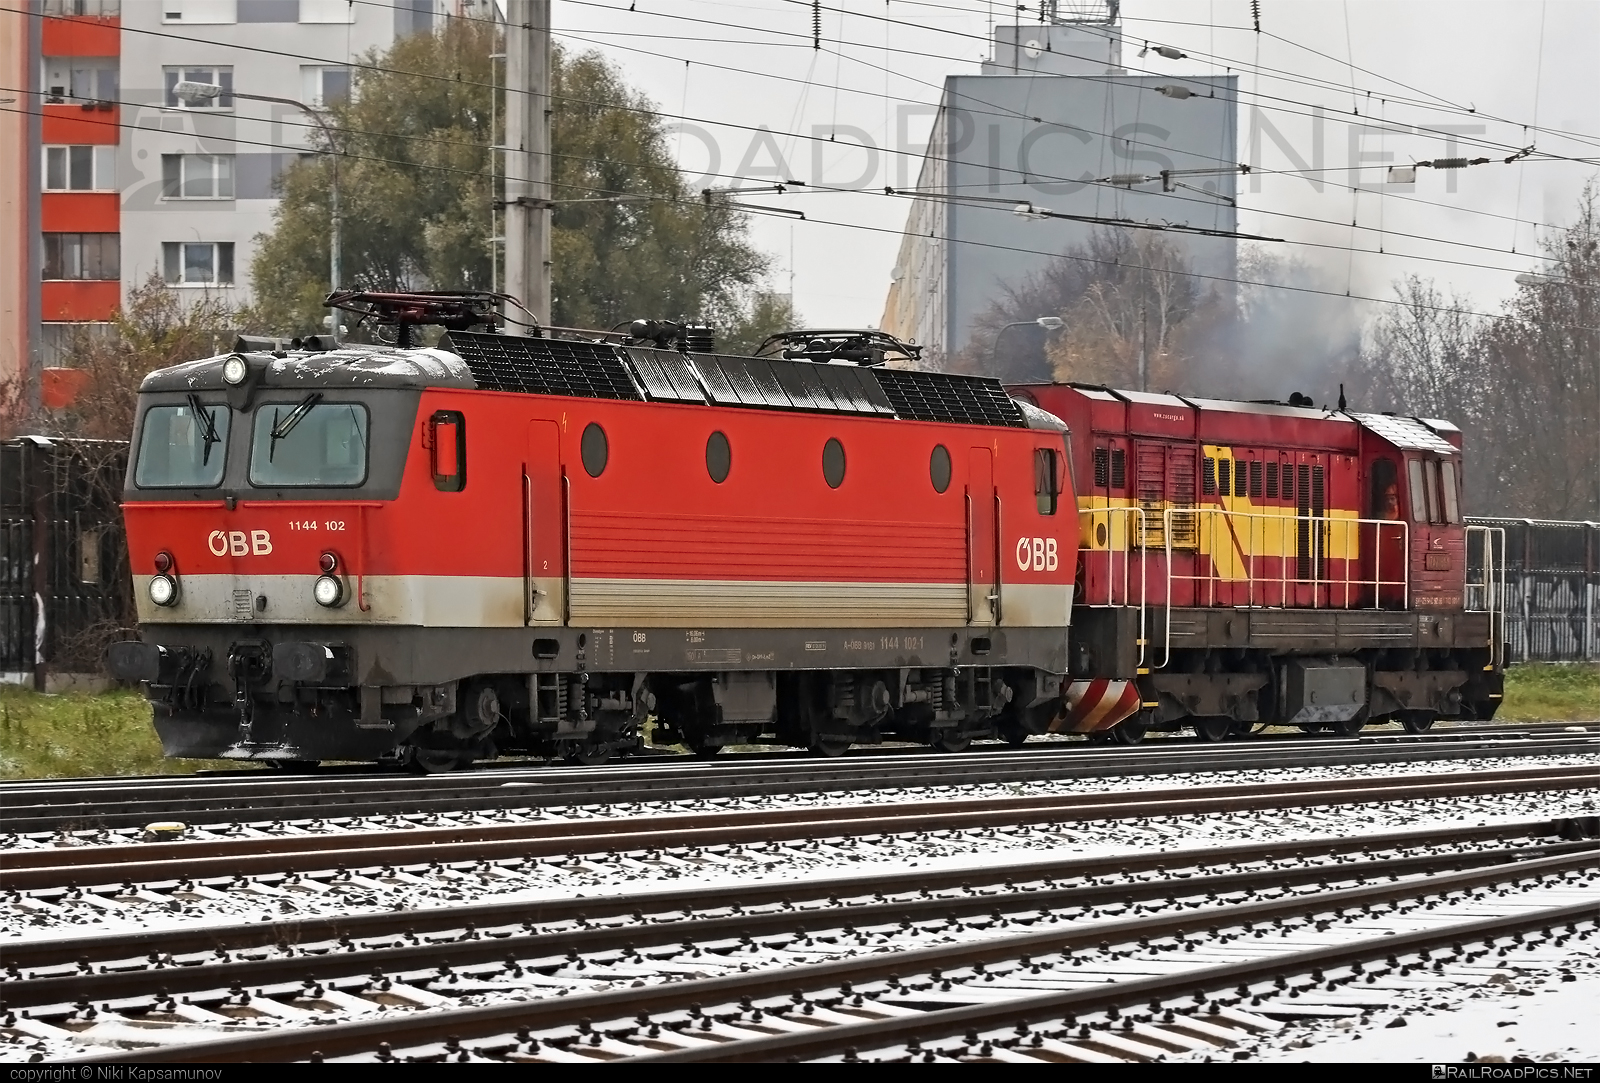 SGP 1144 - 1144 102 operated by Rail Cargo Austria AG #obb #obb1144 #obbClass1144 #osterreichischebundesbahnen #rcw #sgp #sgp1144 #simmeringgrazpauker